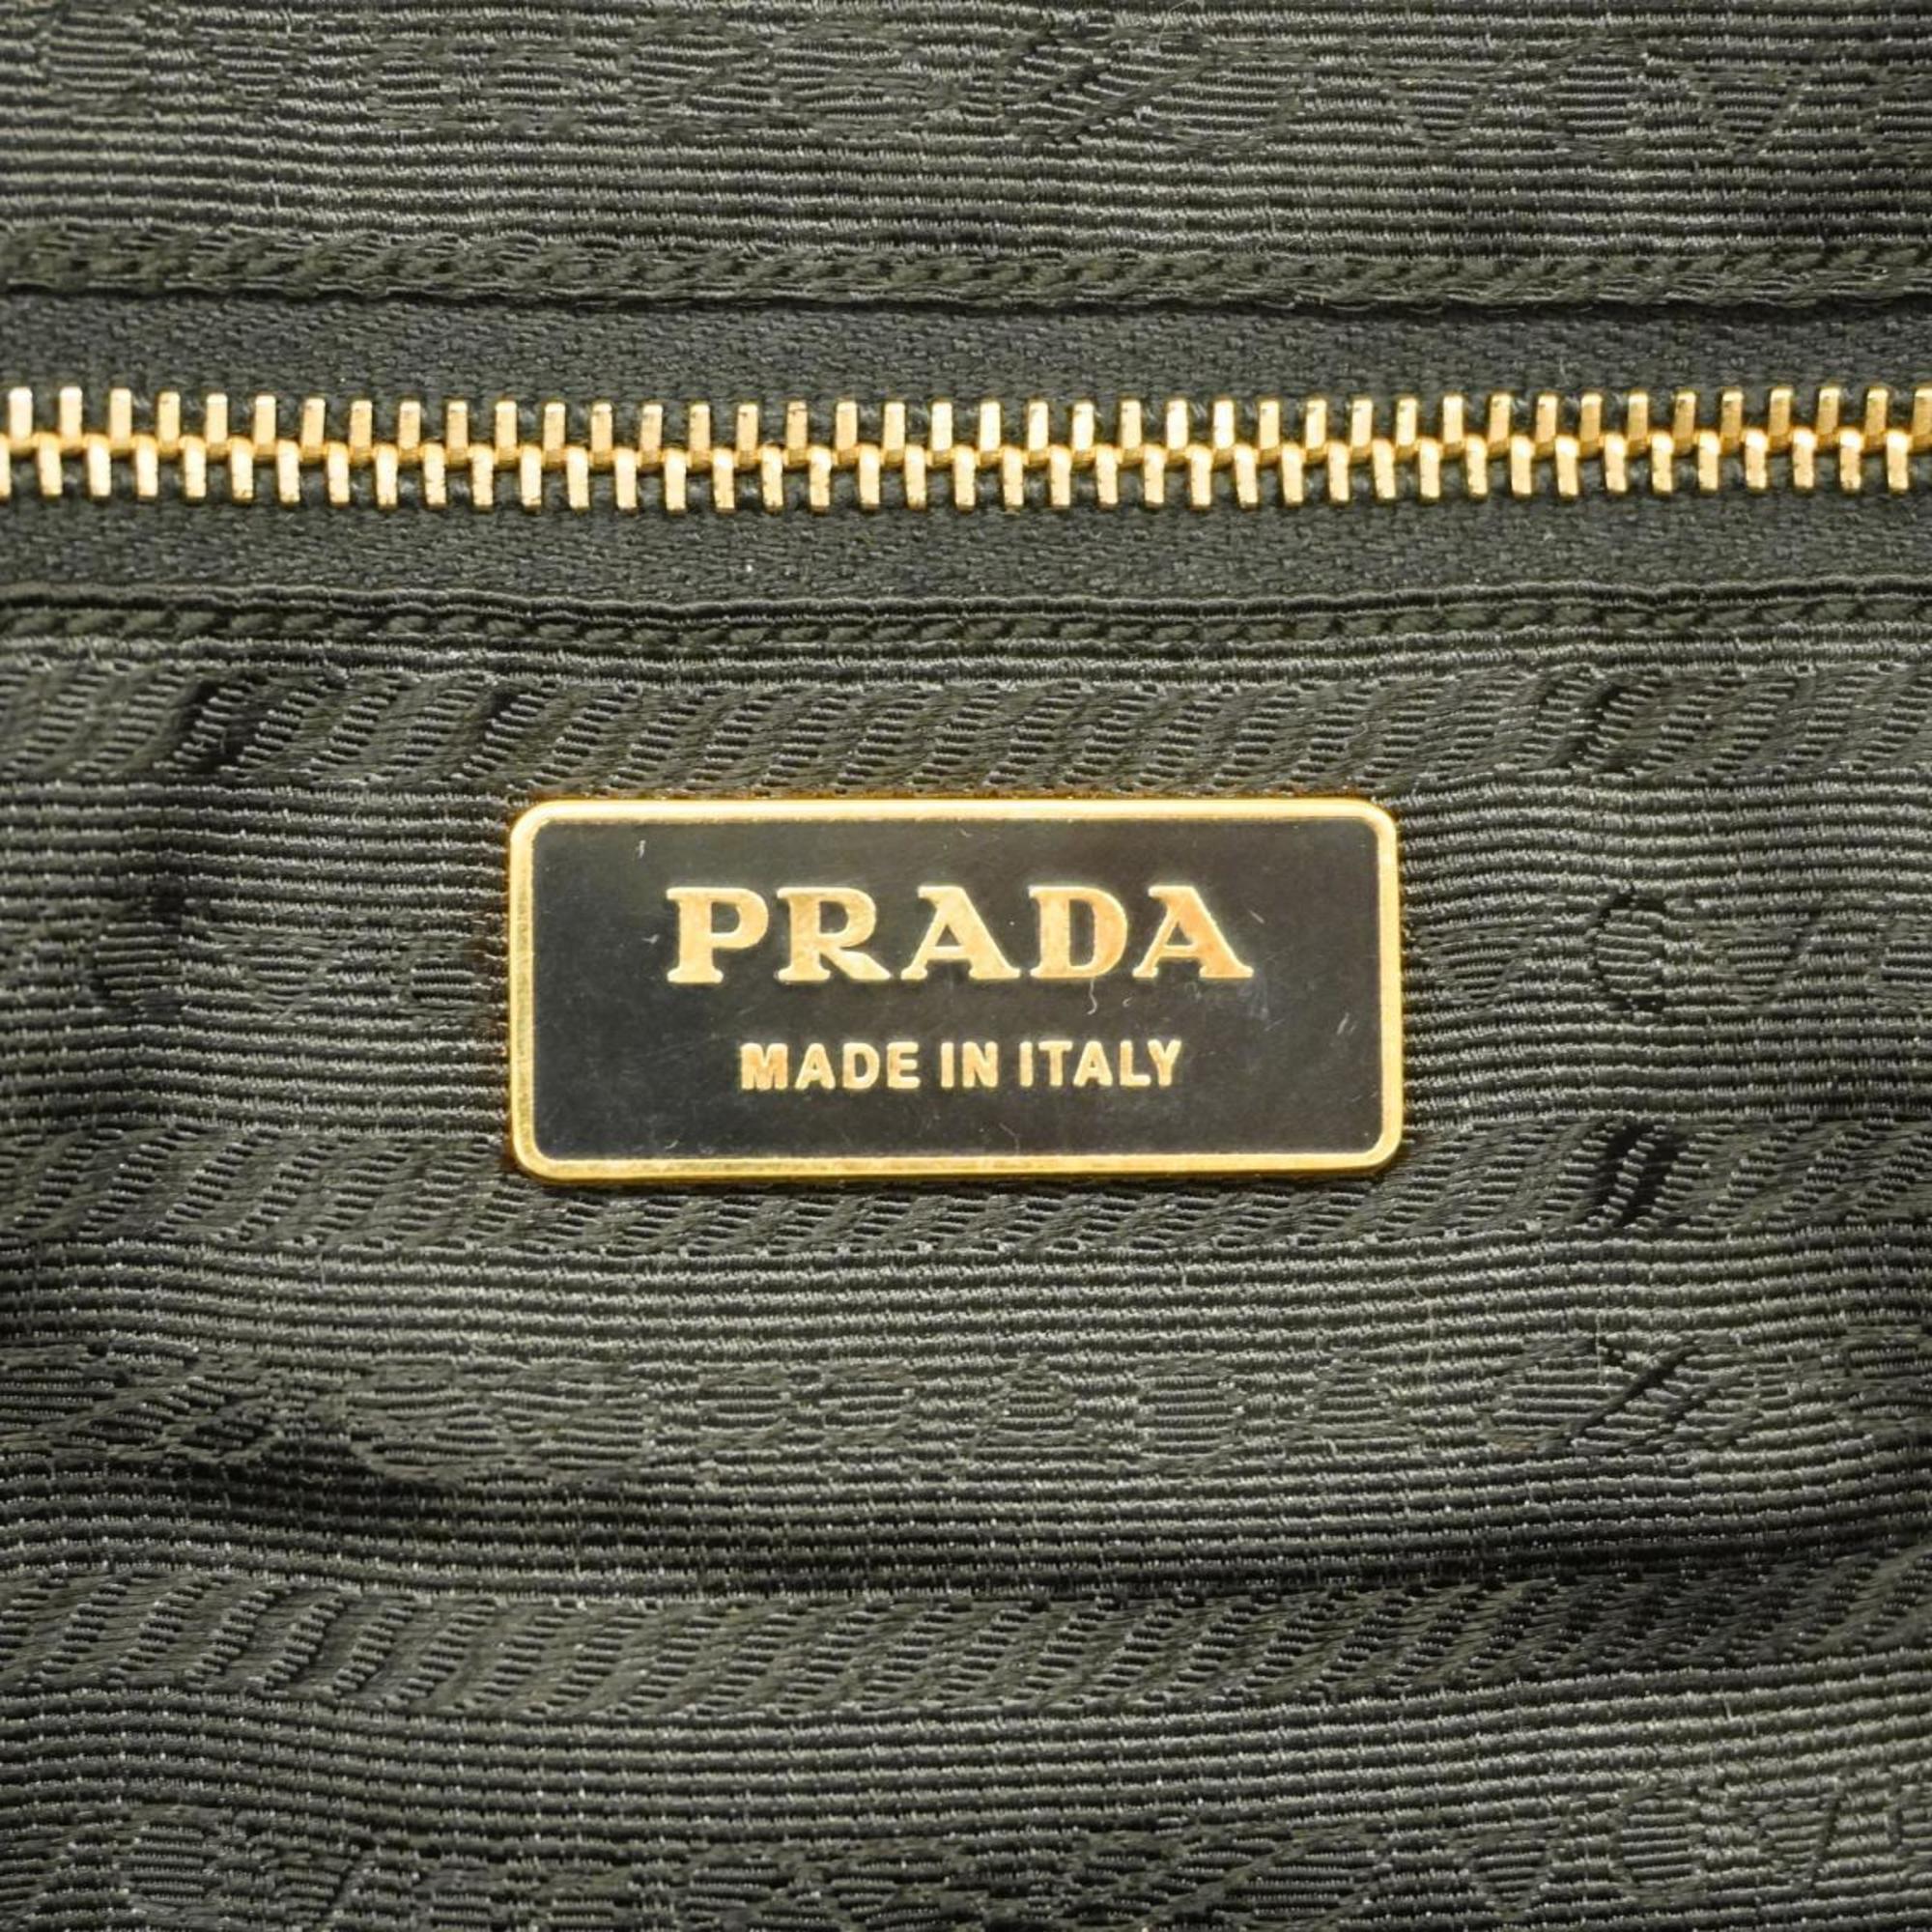 プラダ(Prada) プラダ ハンドバッグ ナイロン レザー ブラック   レディース